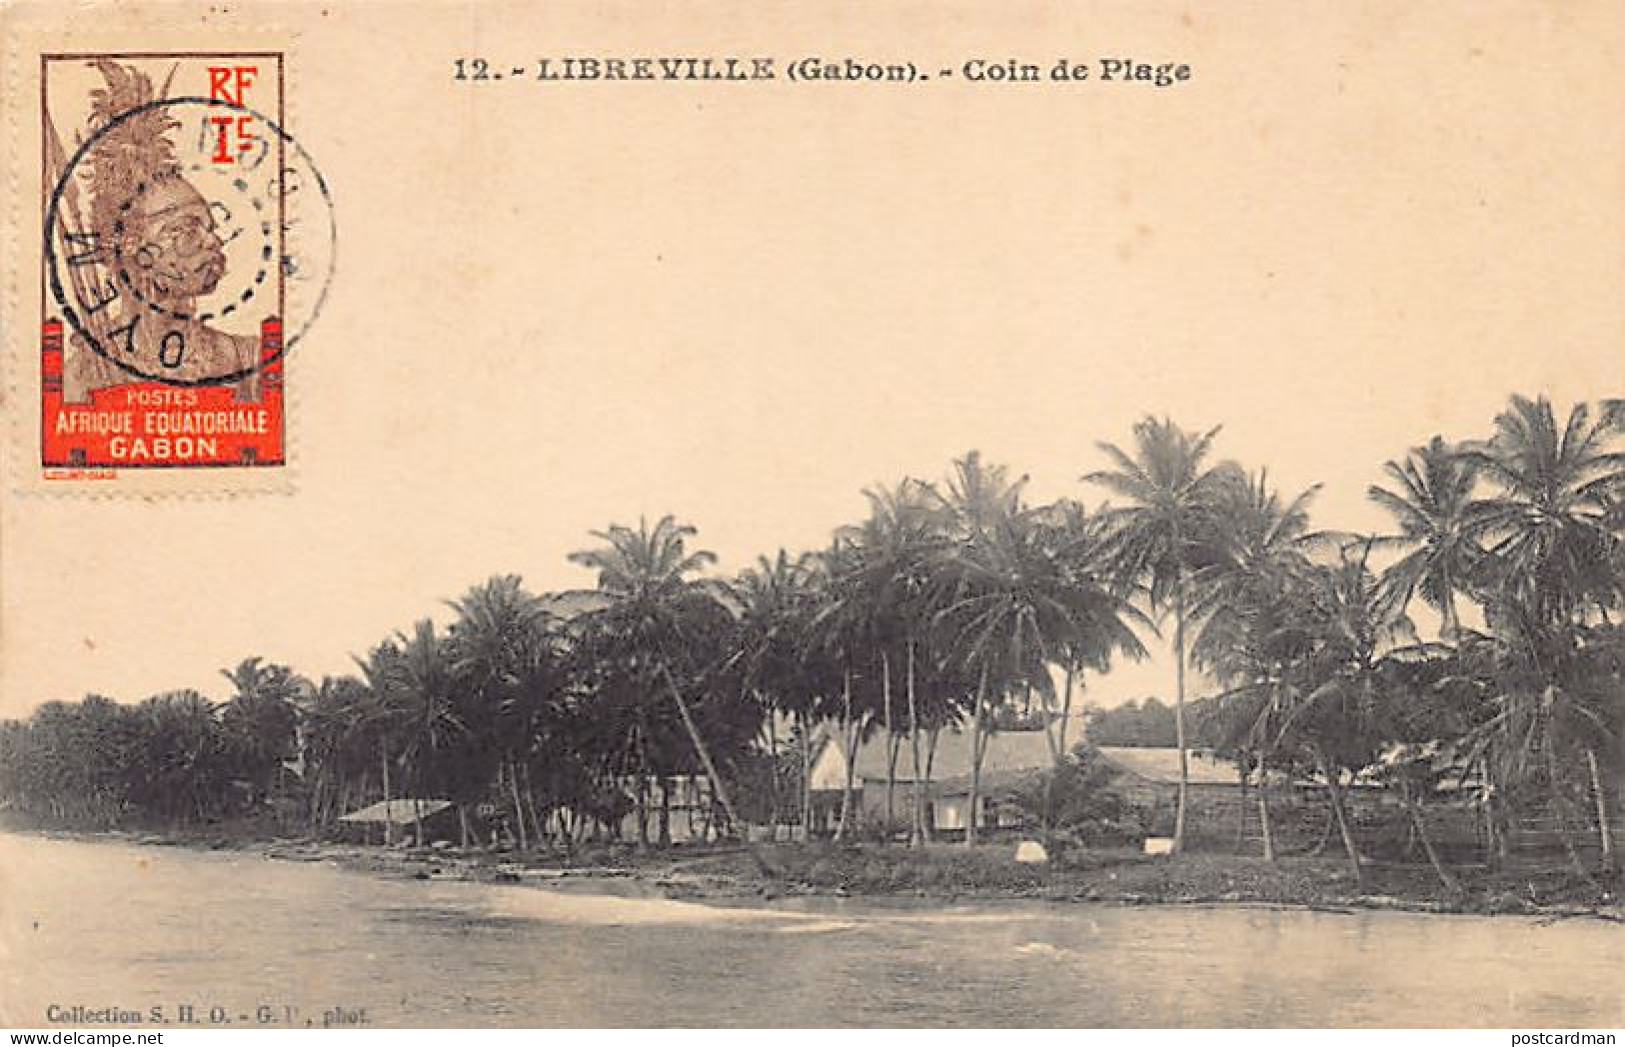 Gabon - LIBREVILLE - Coin De Plage - Ed. S.H.O. - G.P. 12 - Gabon